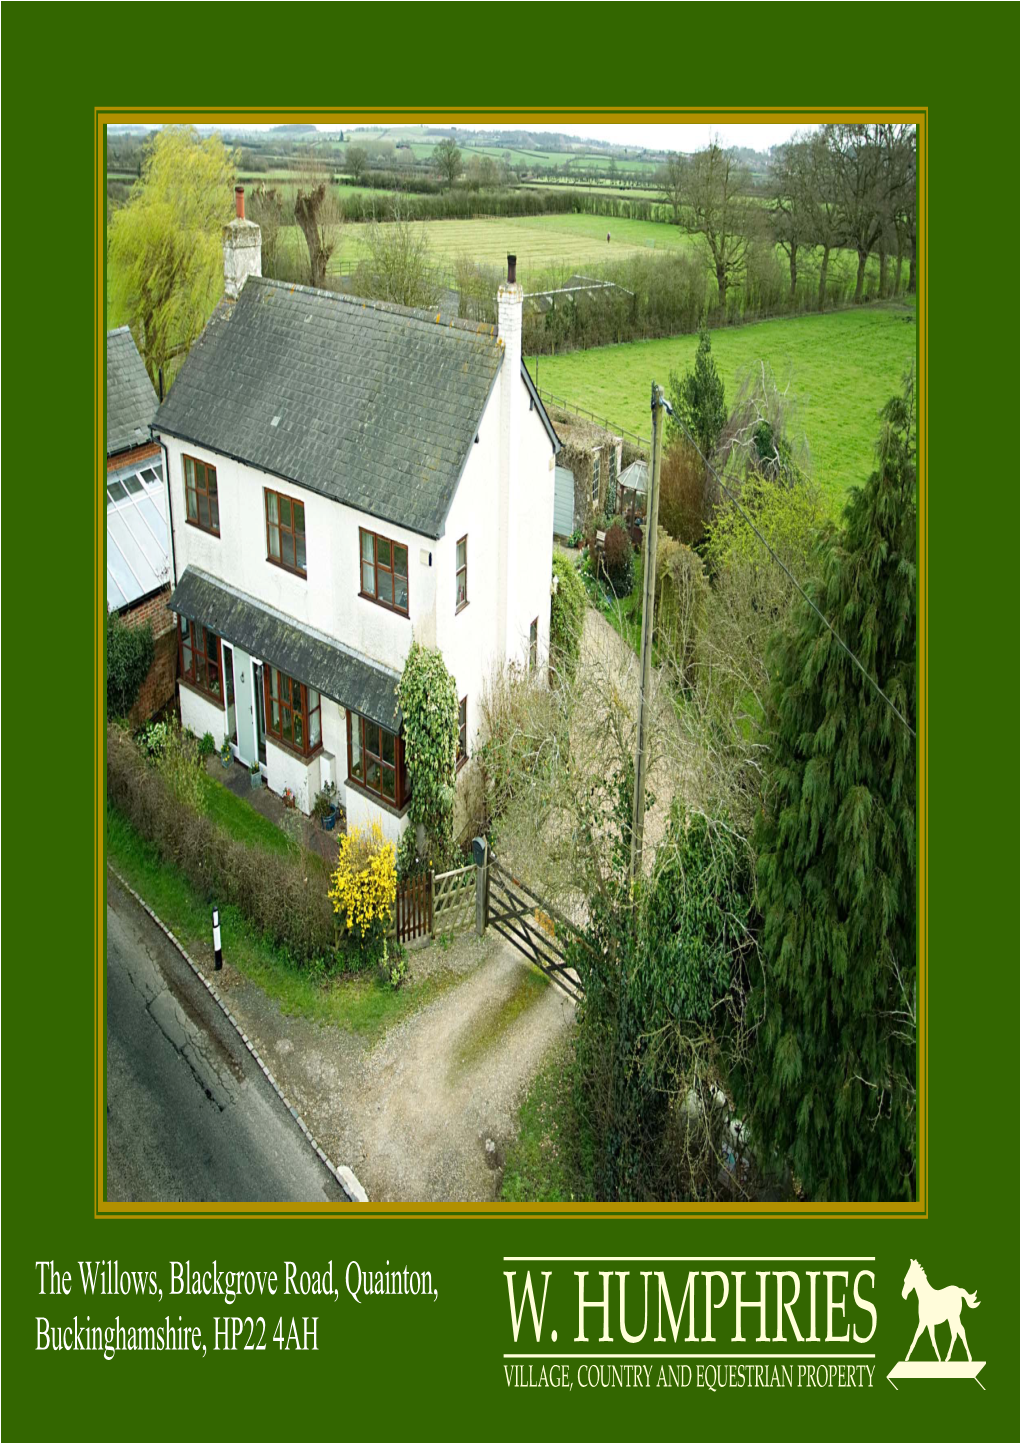 The Willows, Blackgrove Road, Quainton, Buckinghamshire, HP22 4AH